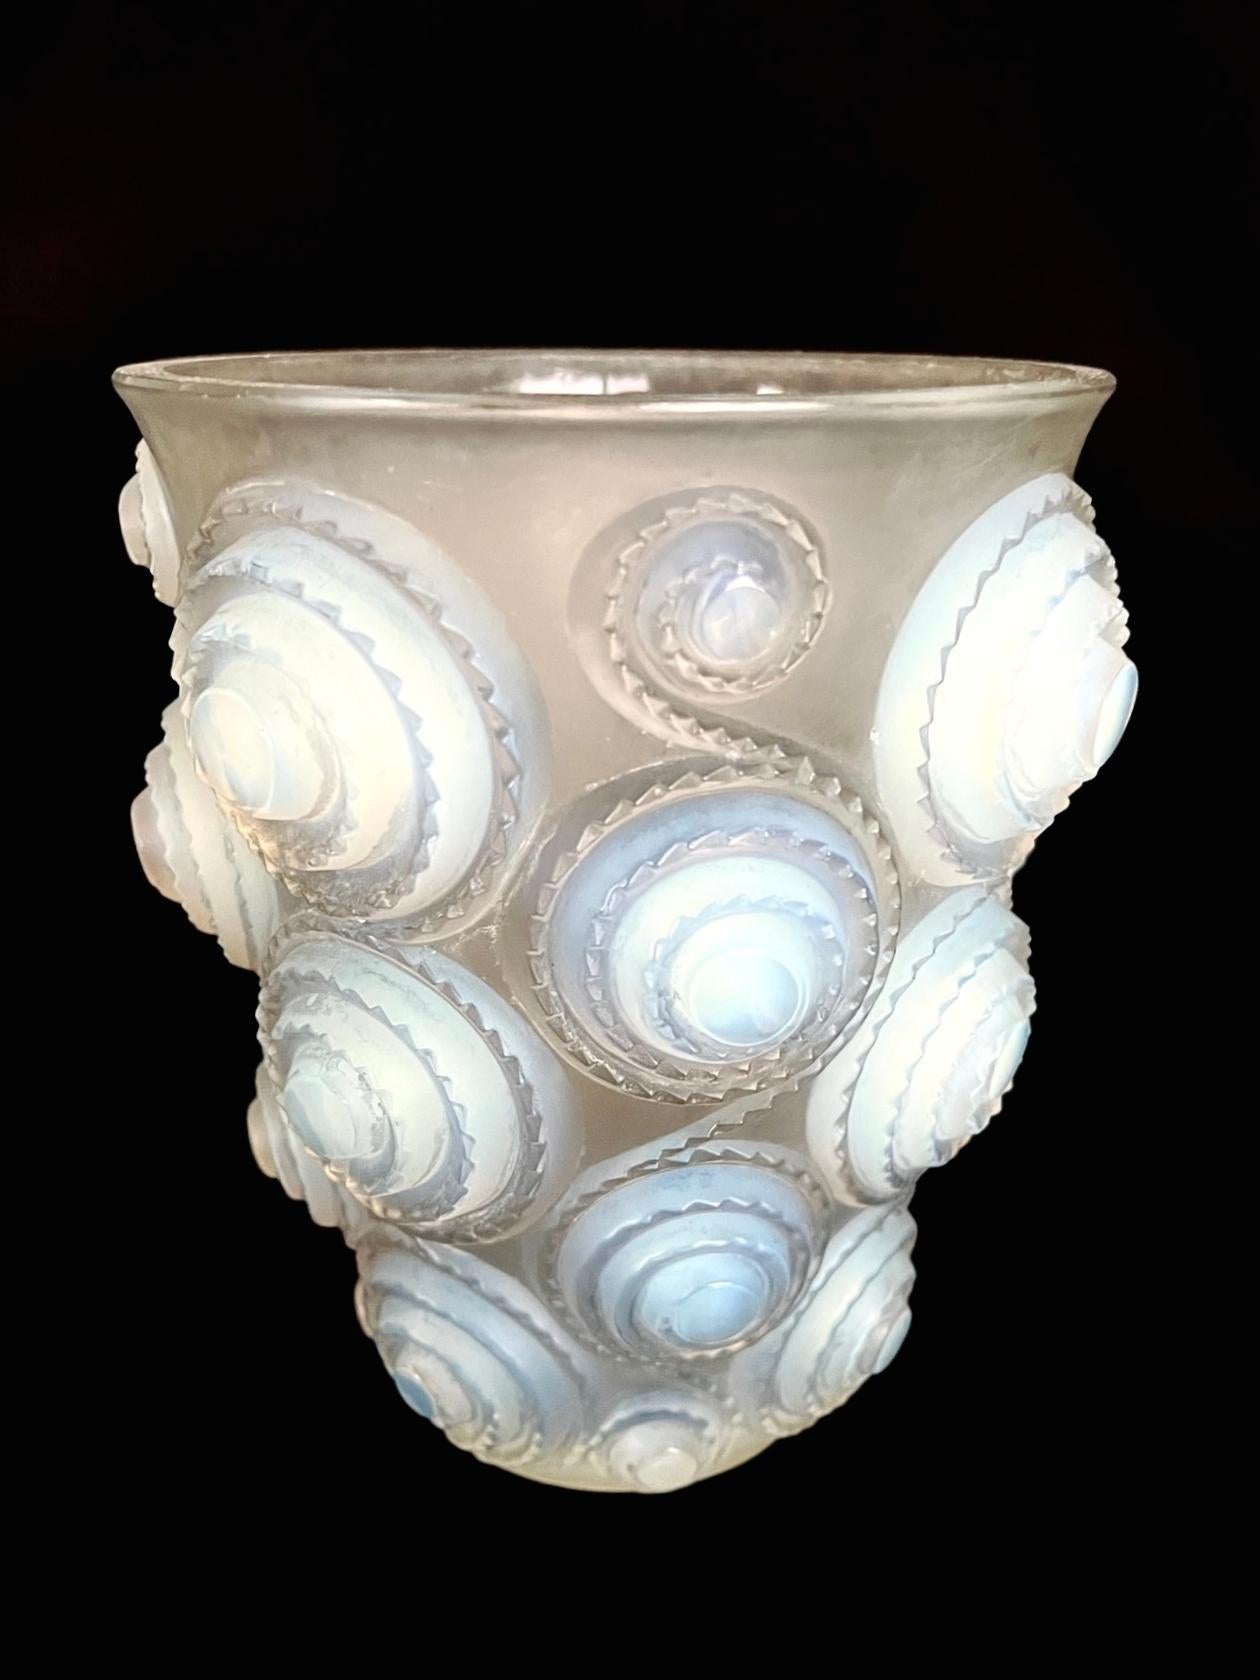 Auffällige Vase aus opalisierendem Glas im Art Déco-Stil mit einem Reliefmuster aus Spiralen und einem gezackten Rand.
Säuregeätzte Signatur 